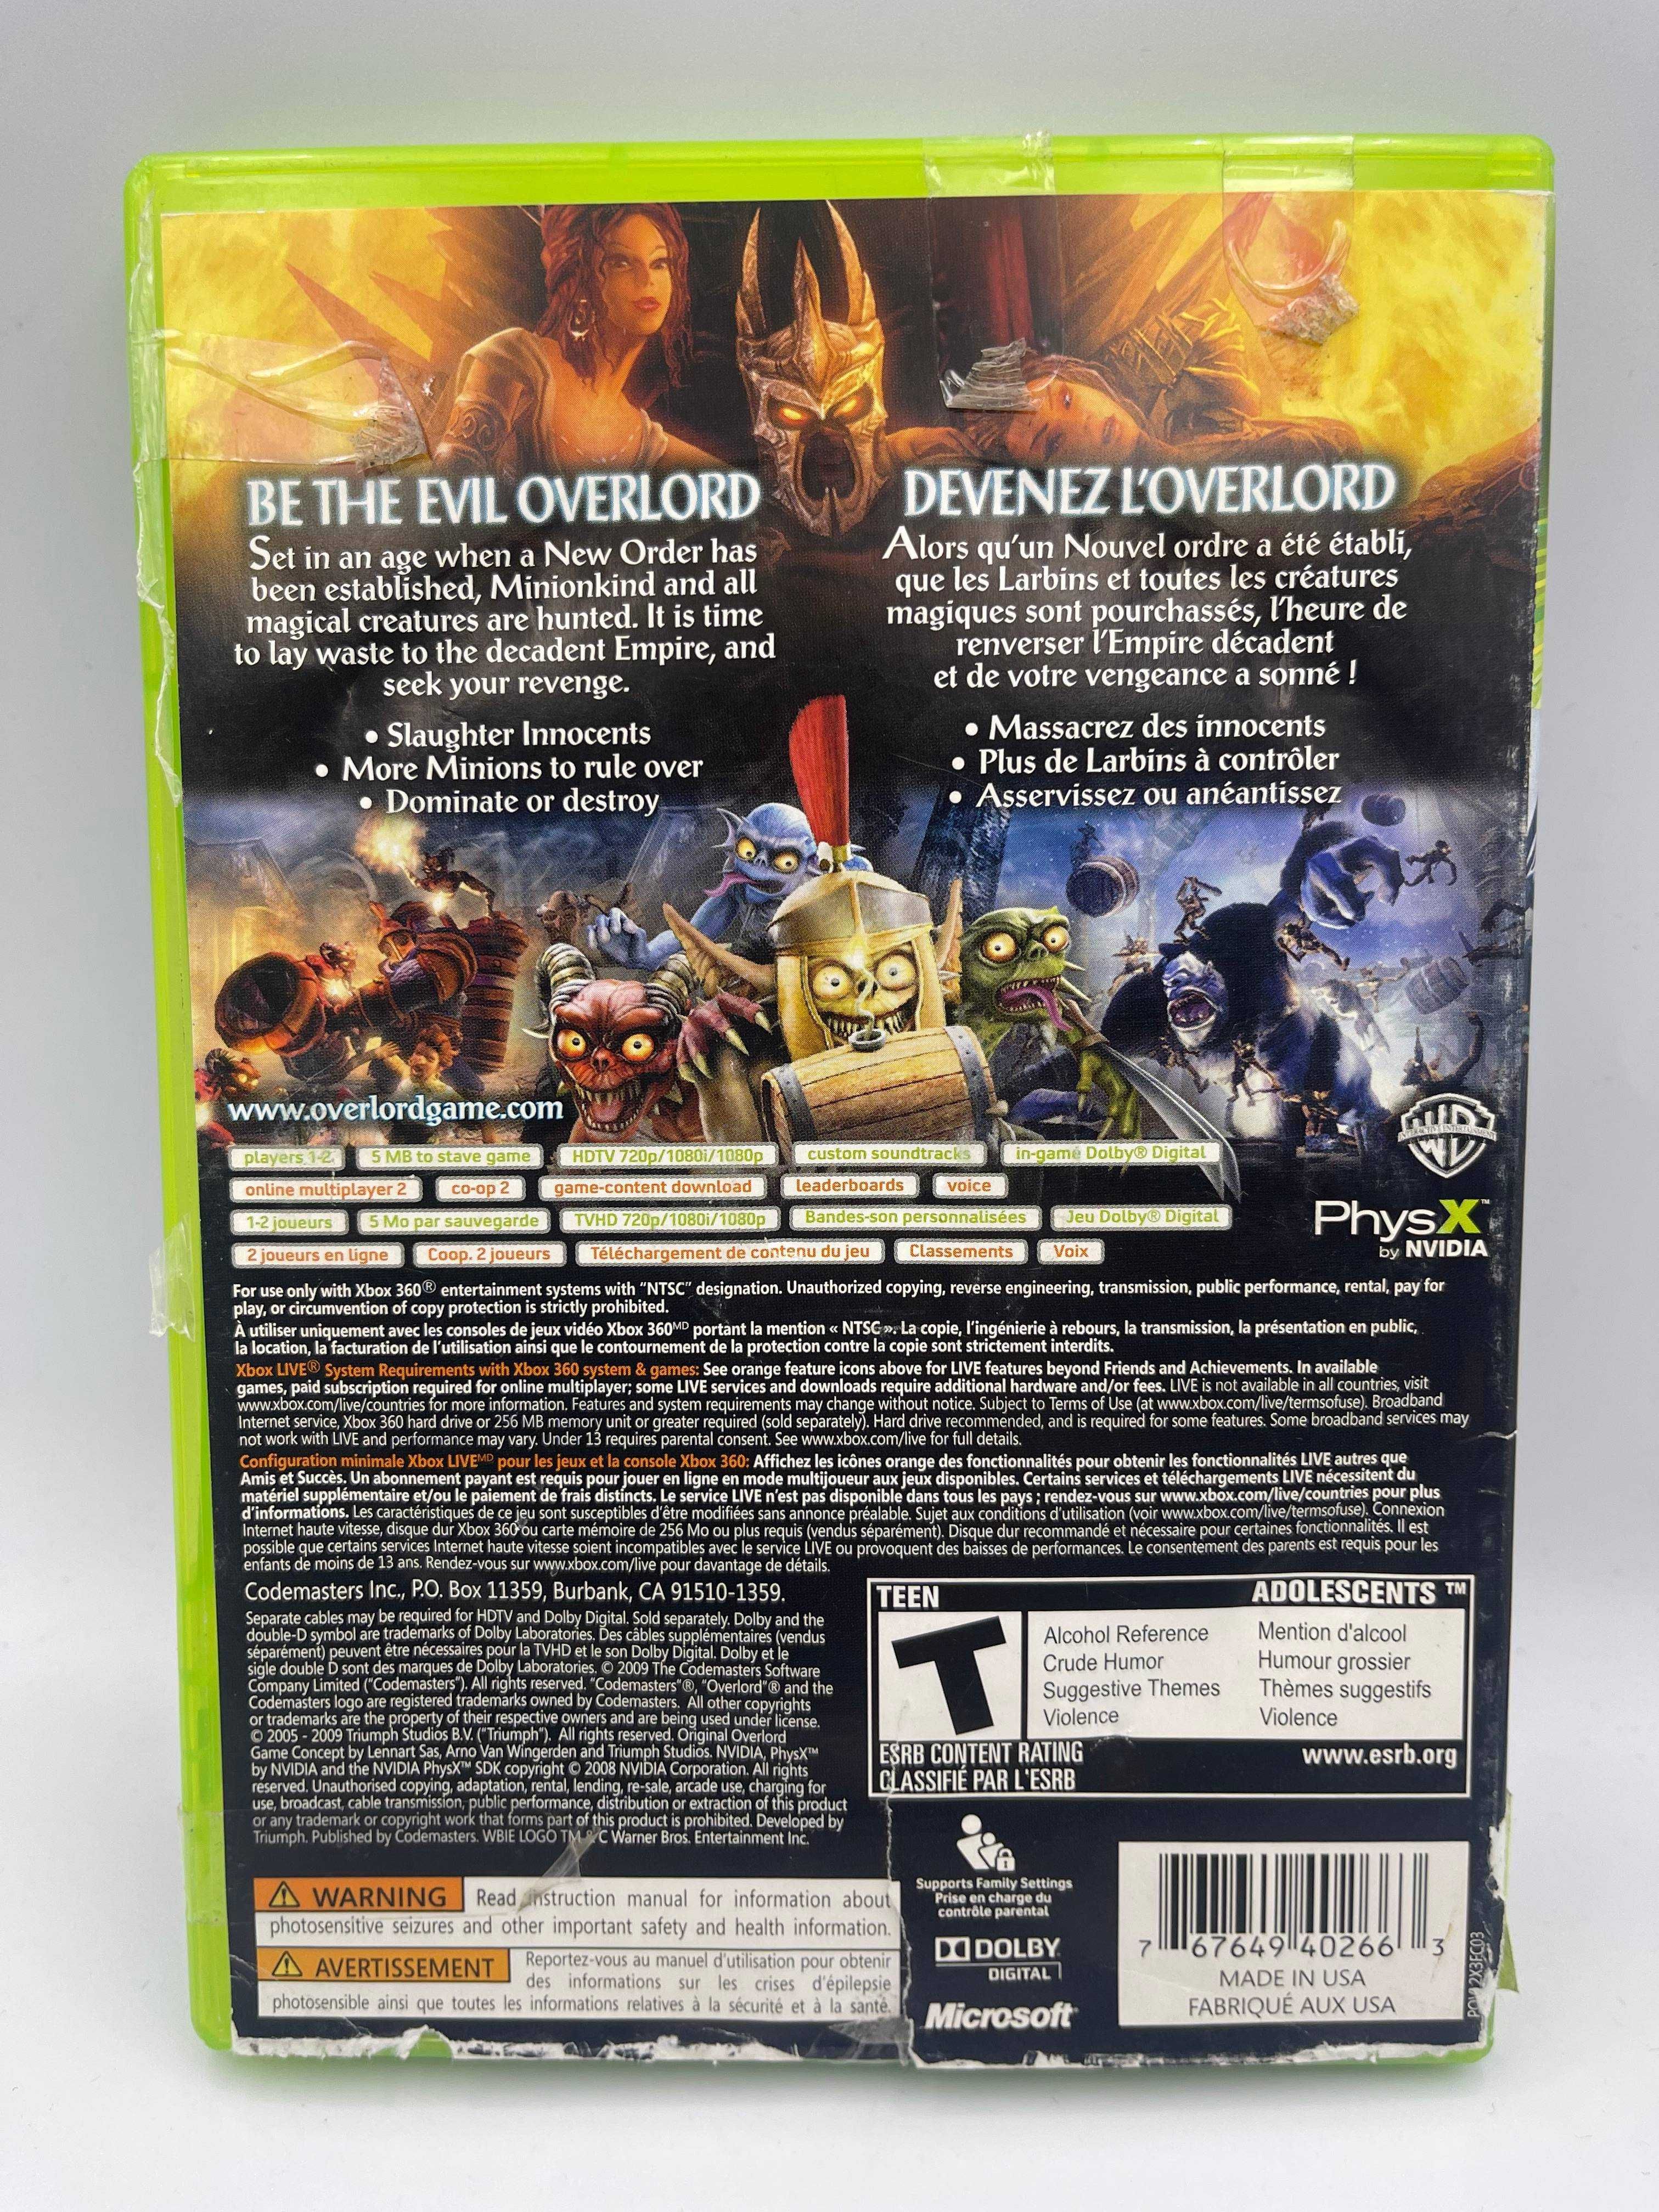 Overlord II Xbox 360